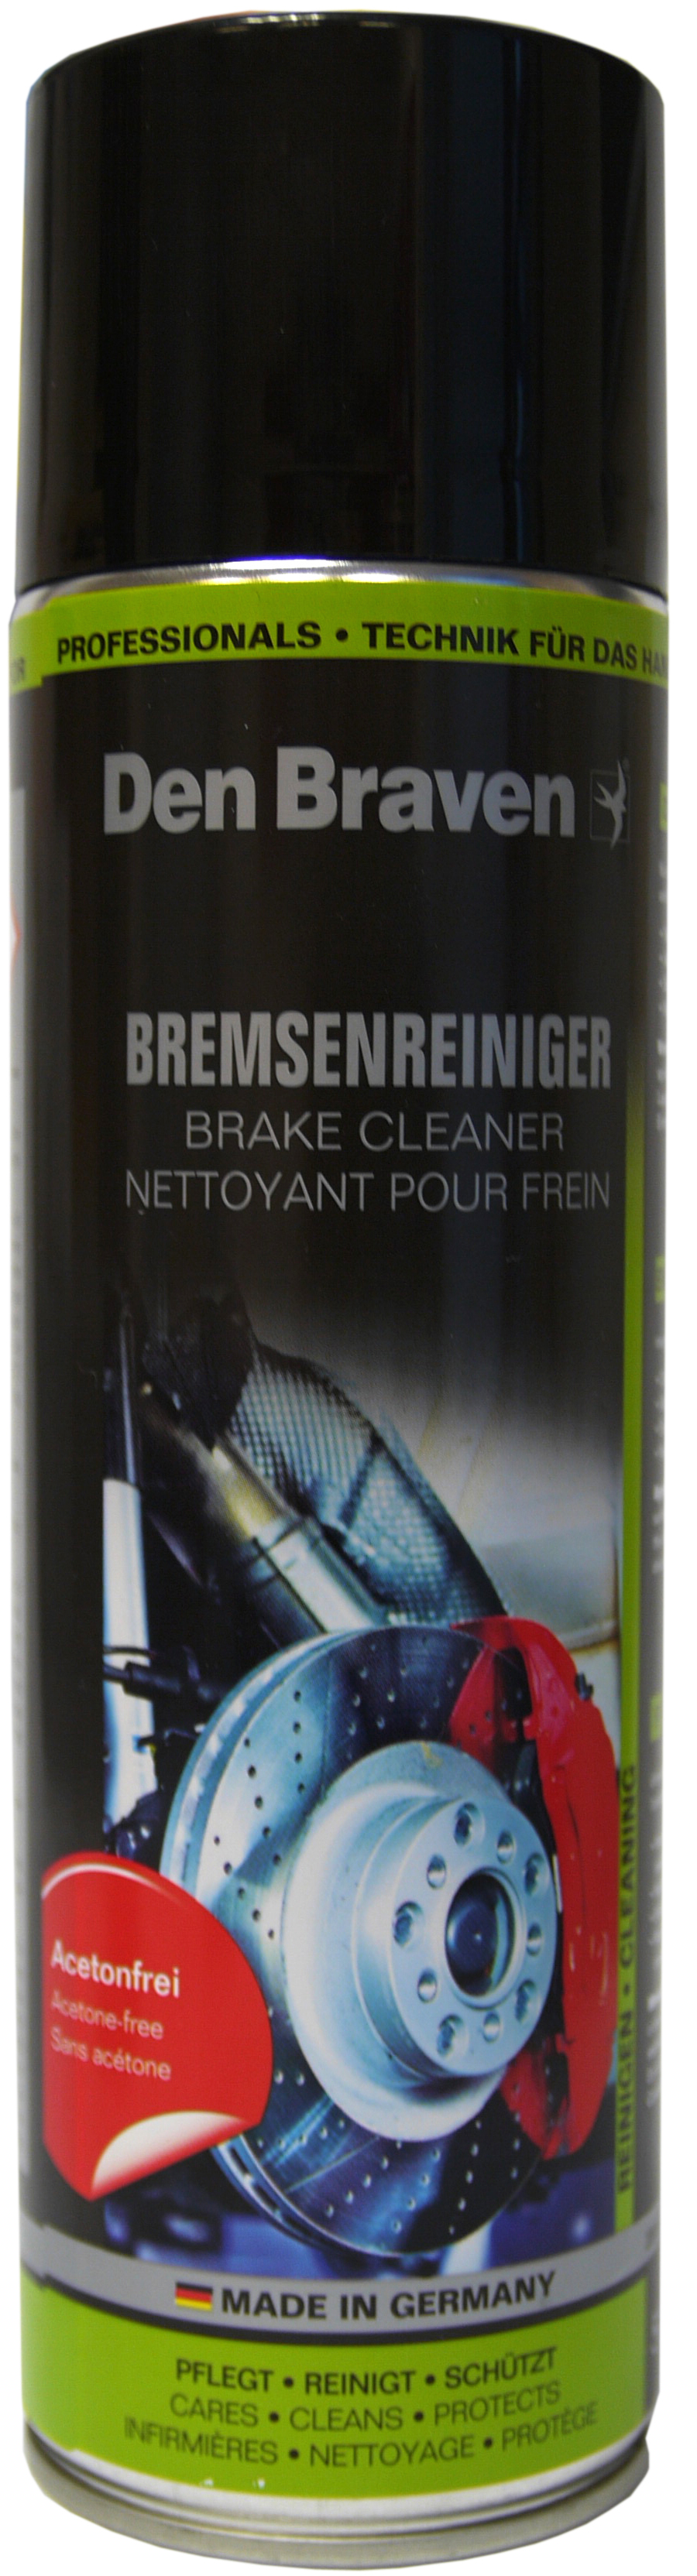 00722 - Bremsen Reiniger acetonfrei, 500 ml